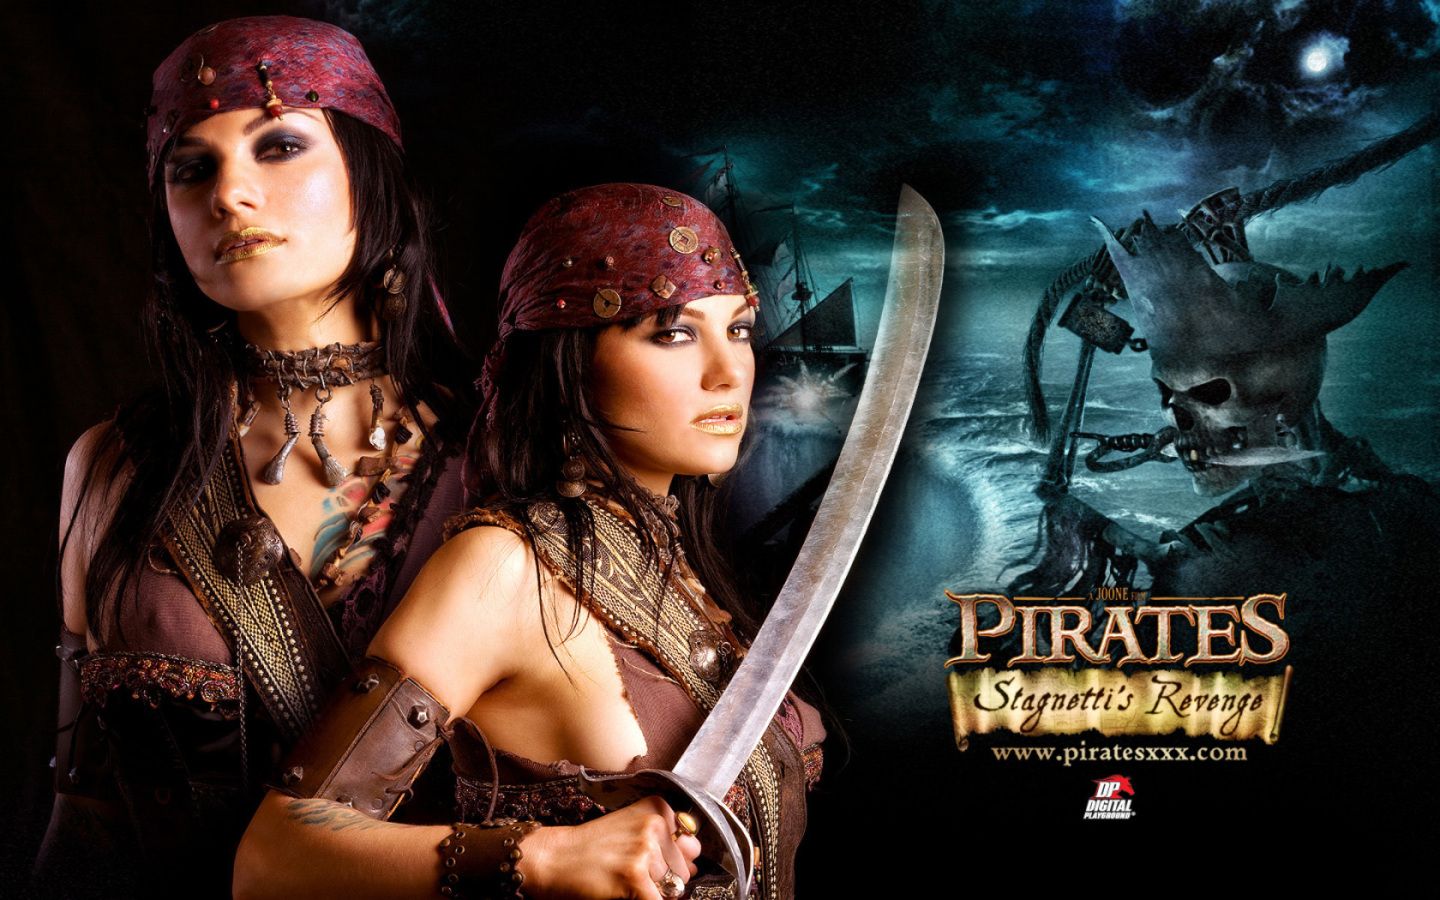 pirates 2 stagnettis revenge full movie download